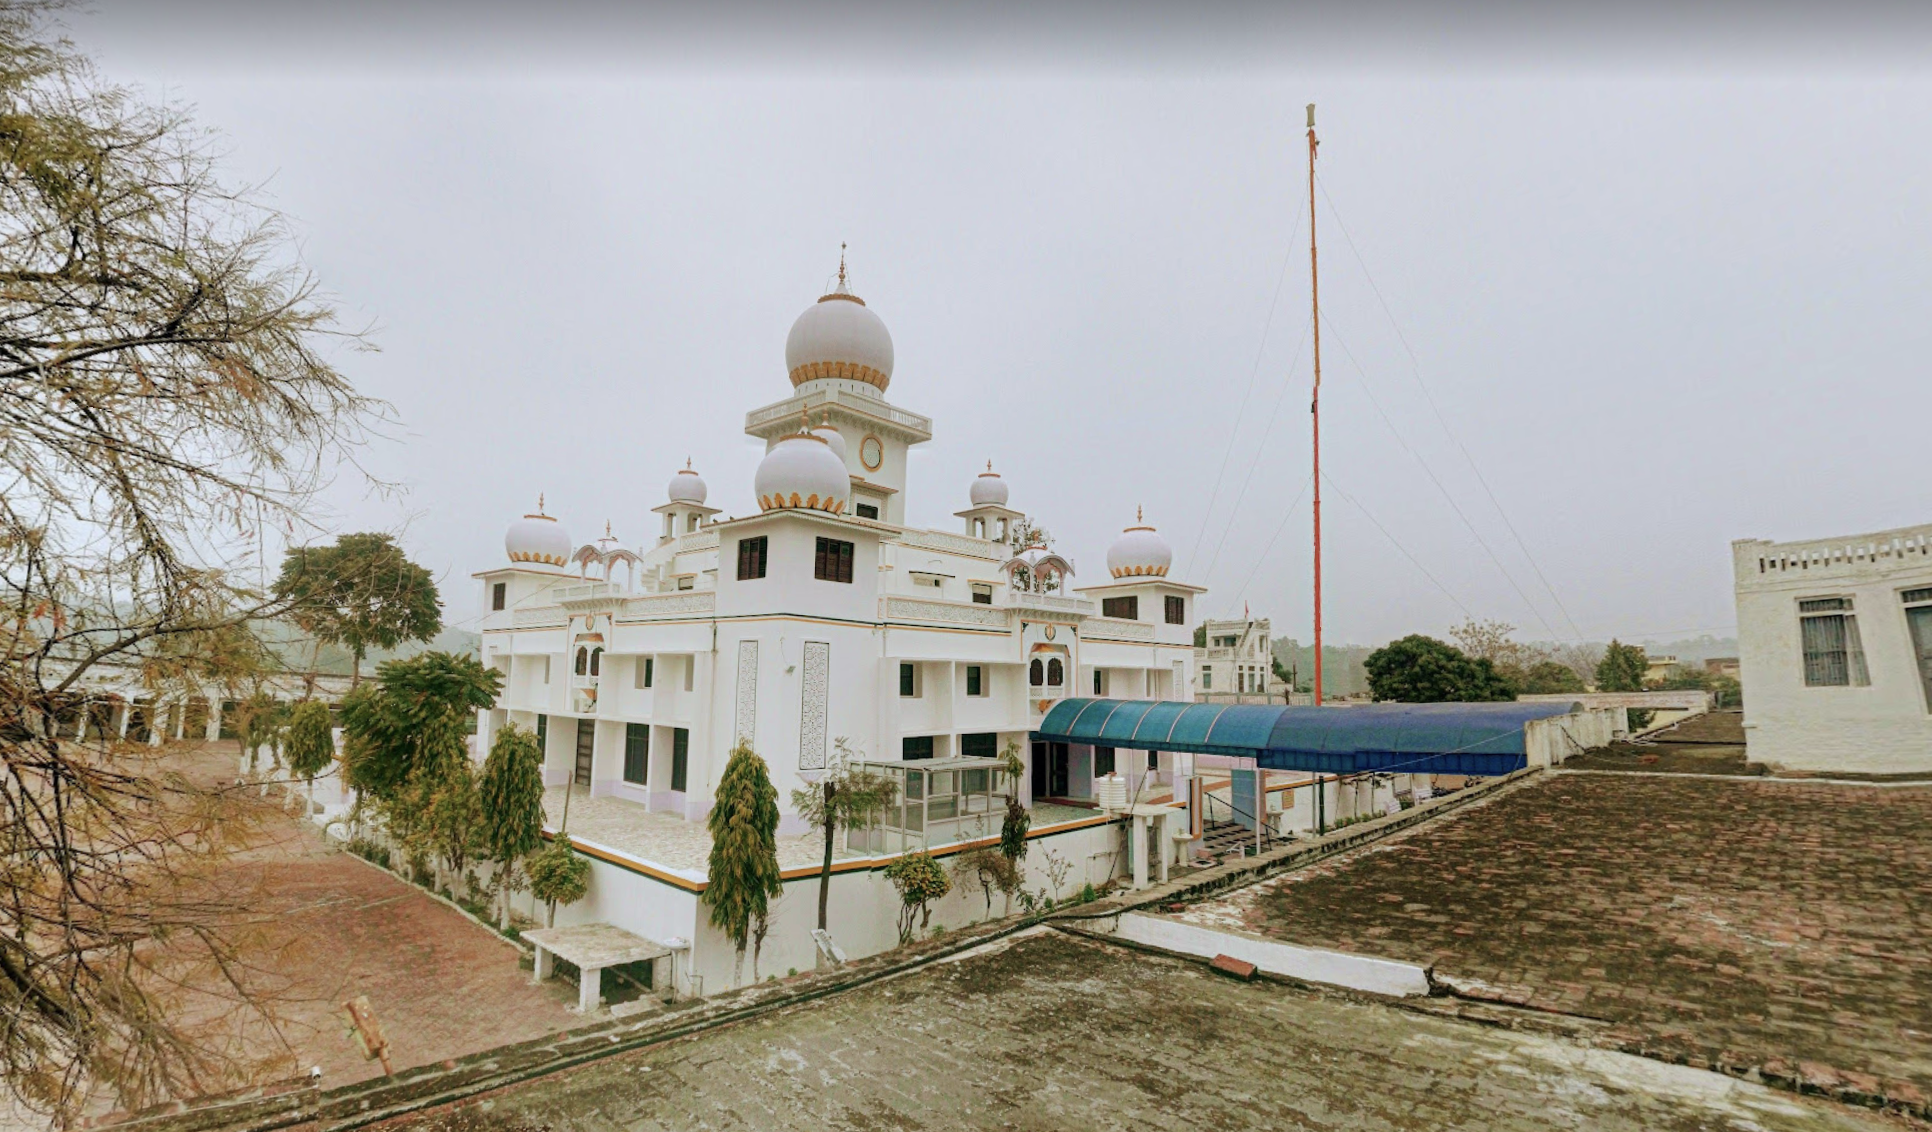 Gurudwara Sri Jhar Sahib – Chuharpur